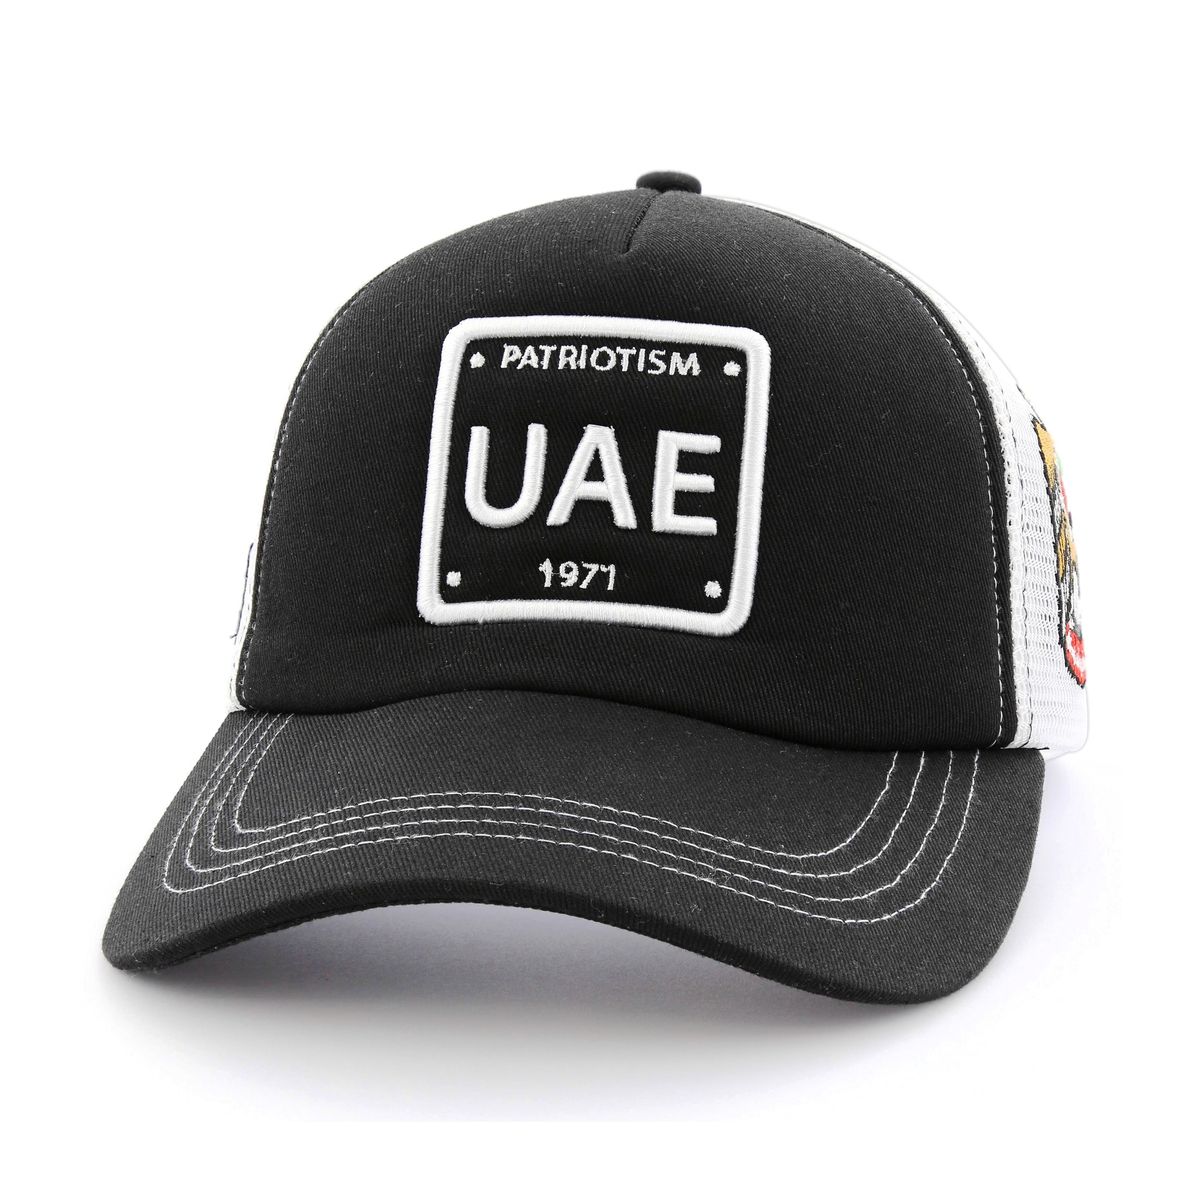 B180 UAE Patriotism 5 Unisex Trucker Cap Black/White Limited Edition